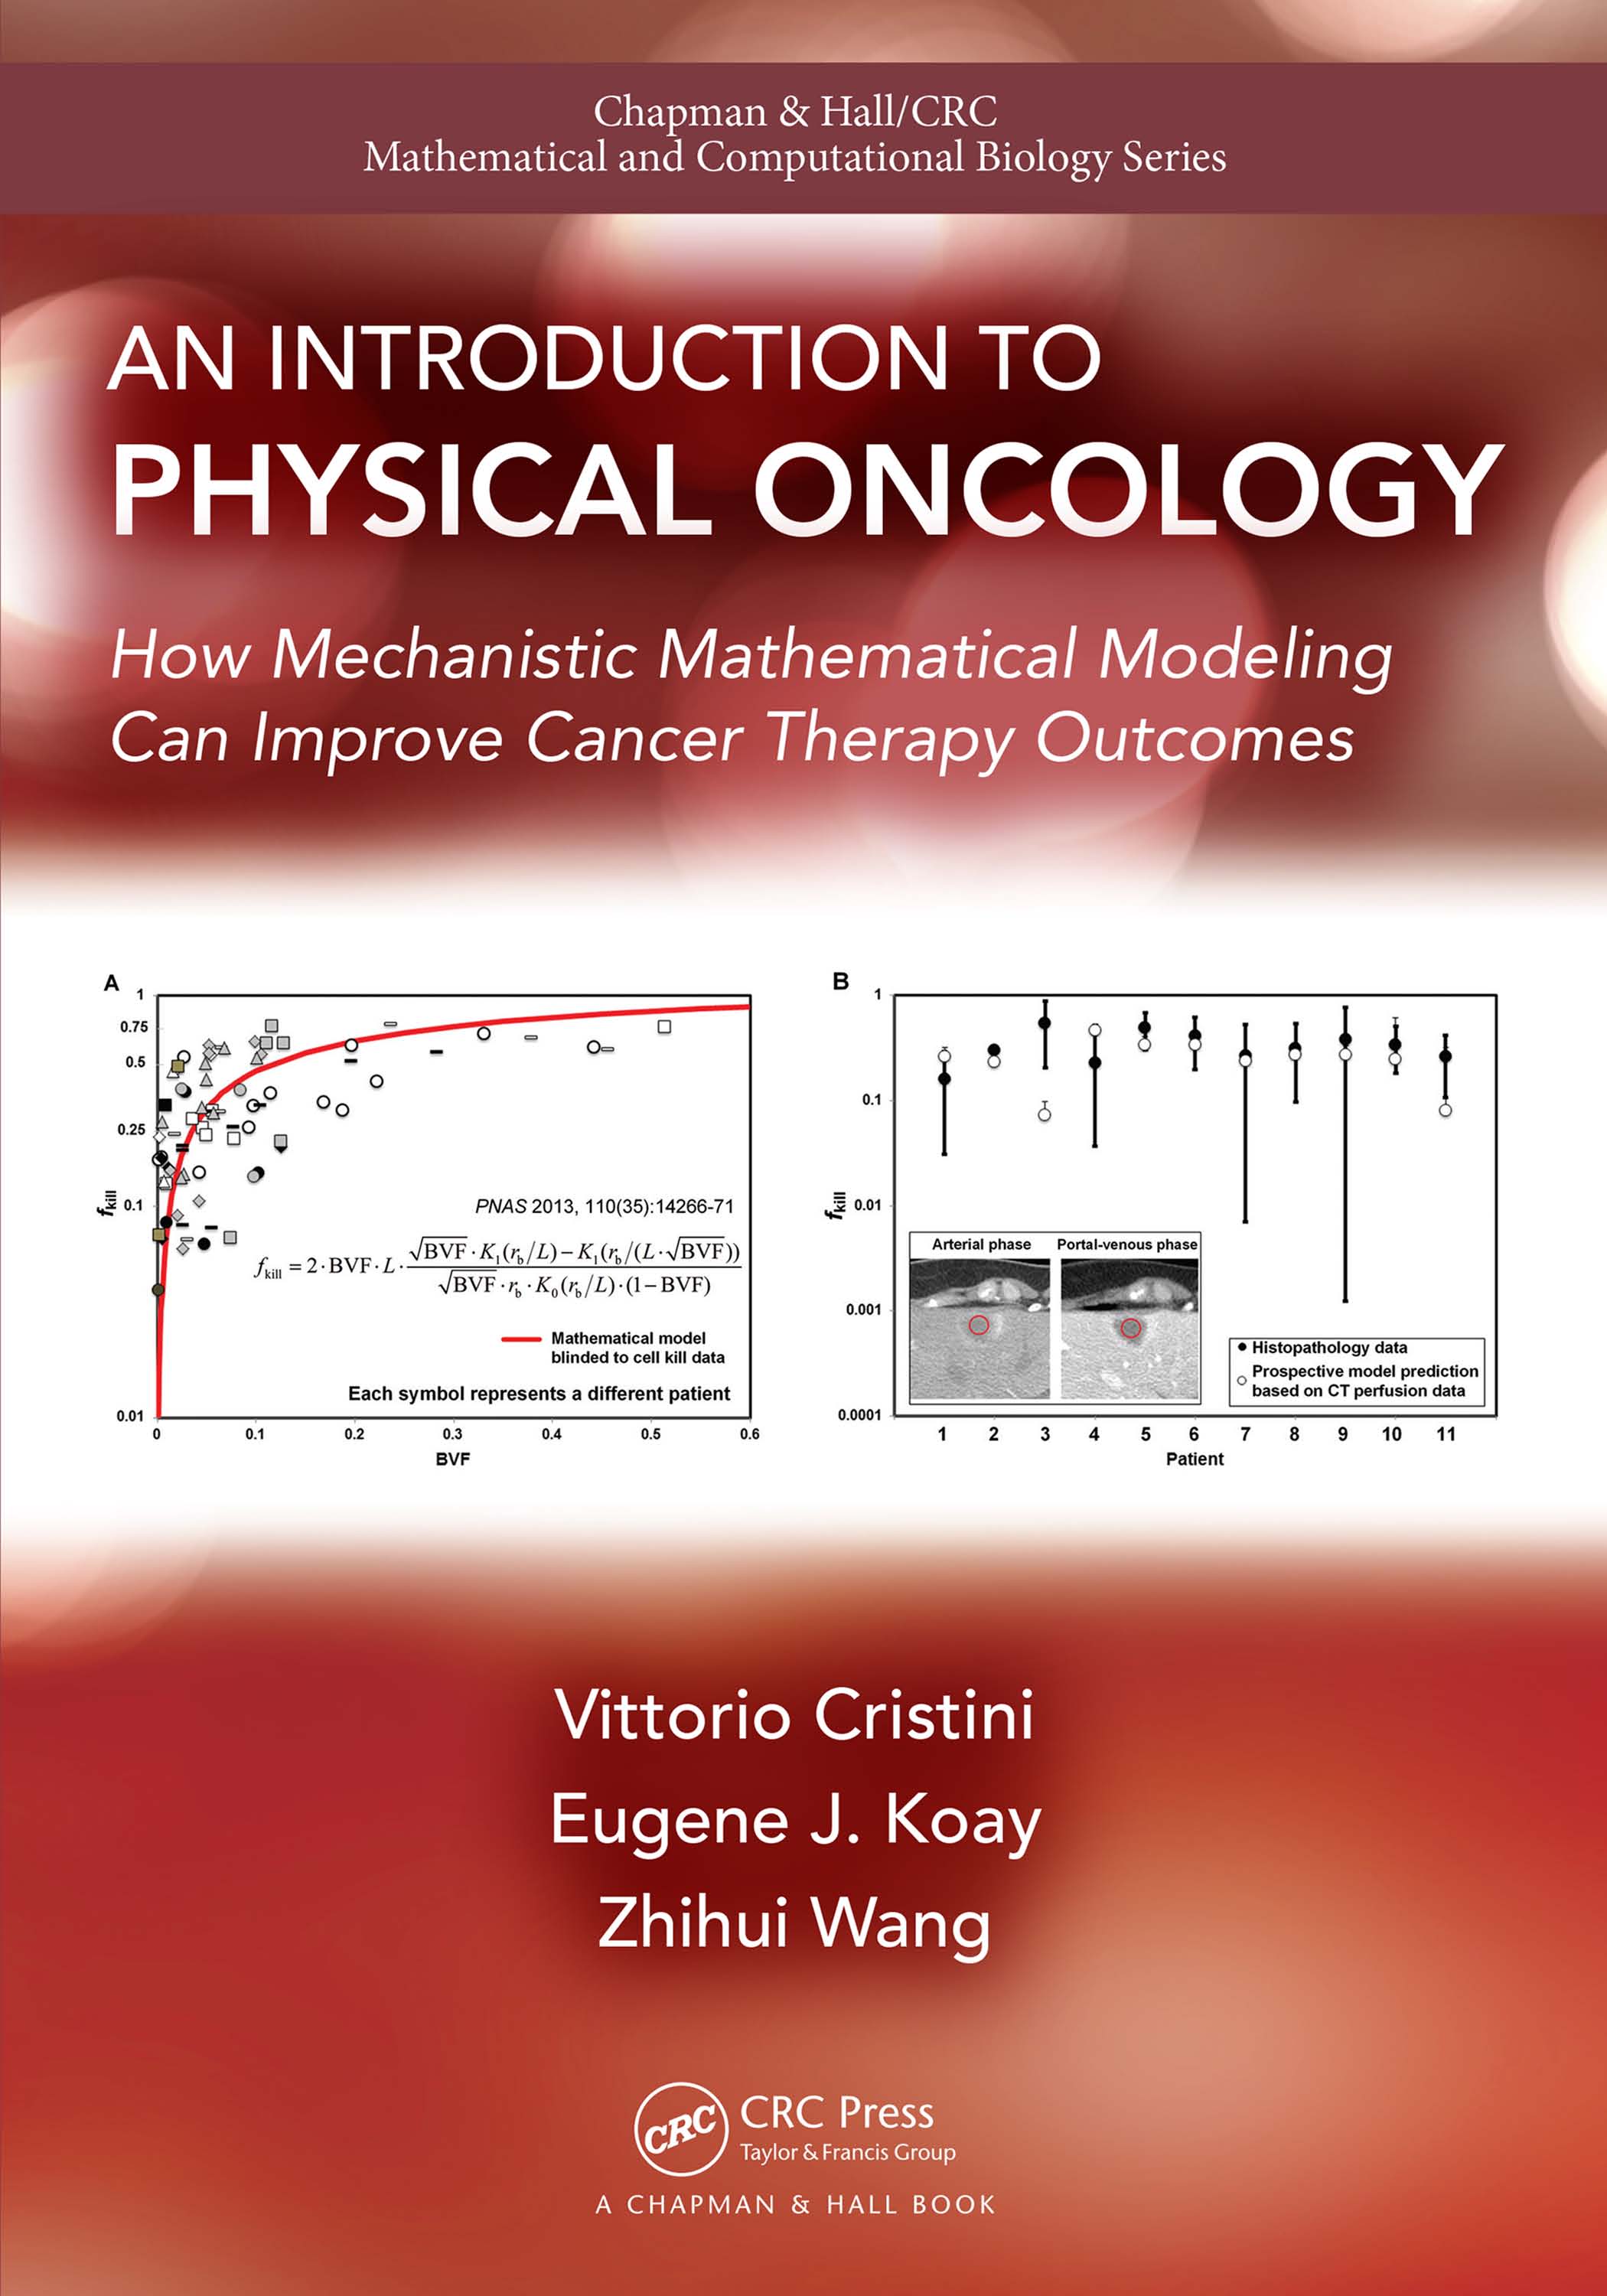 页面提取自－An Introduction to Physical Oncology (1).jpg